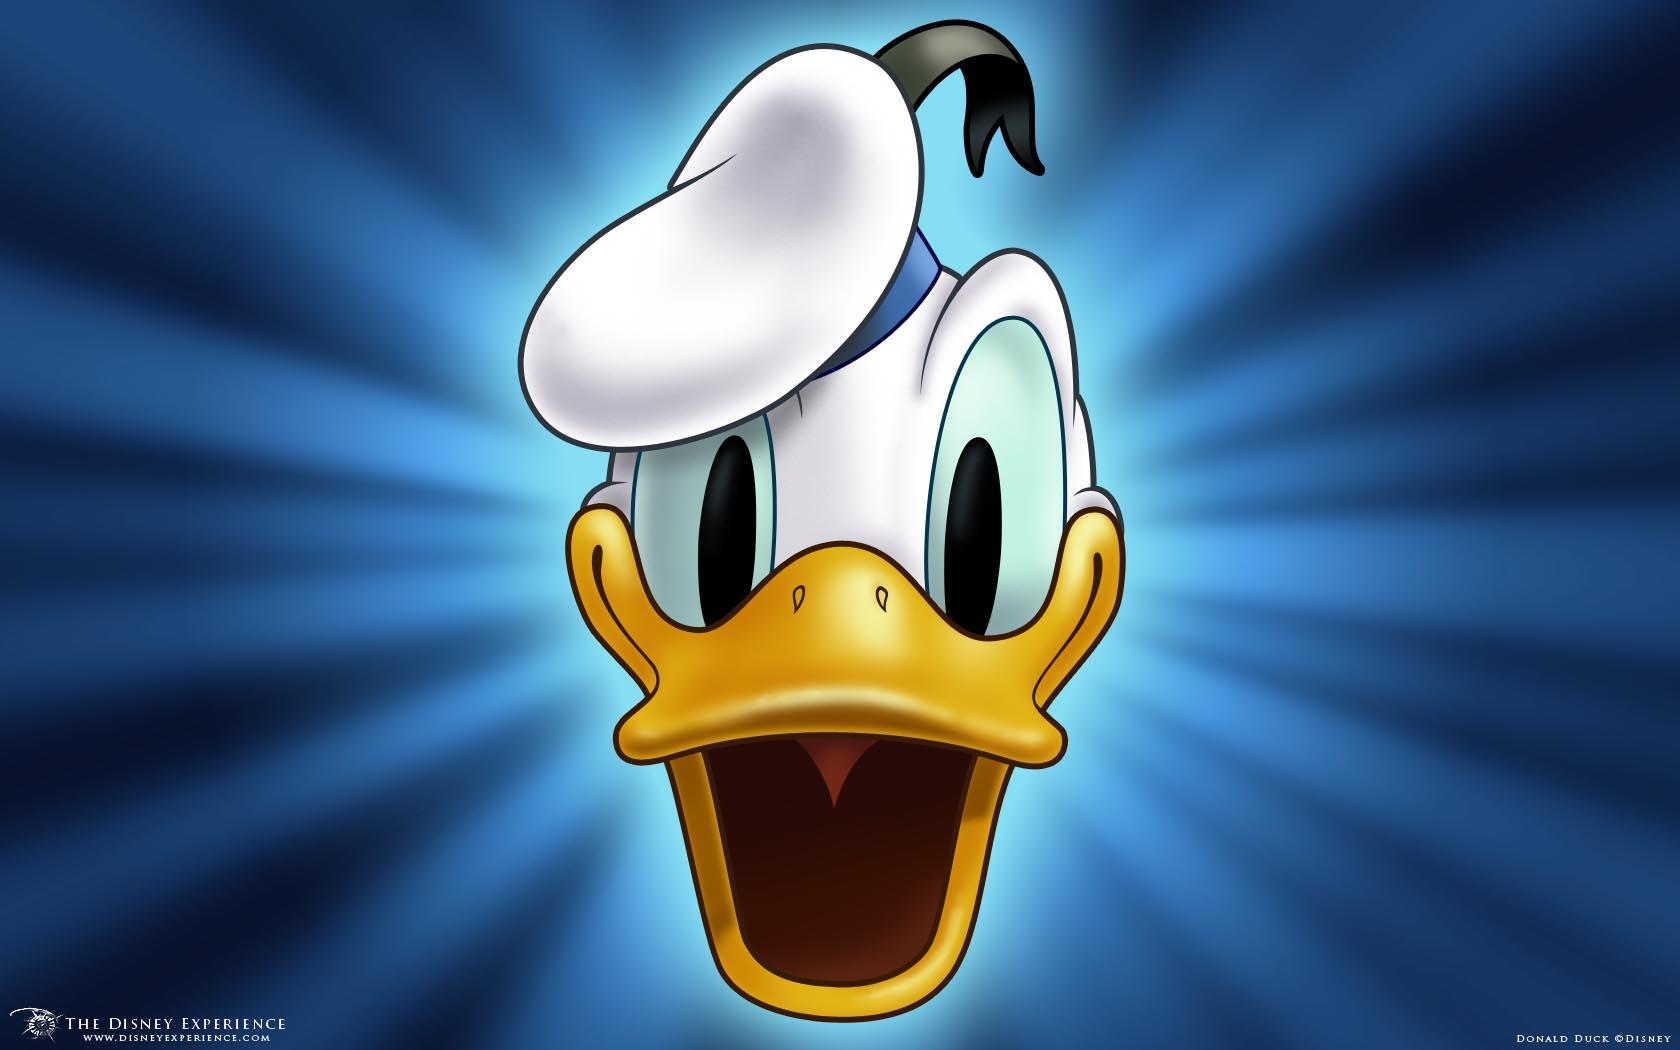 Donald Duck Wallpaper and Friends Wallpaper 37610717